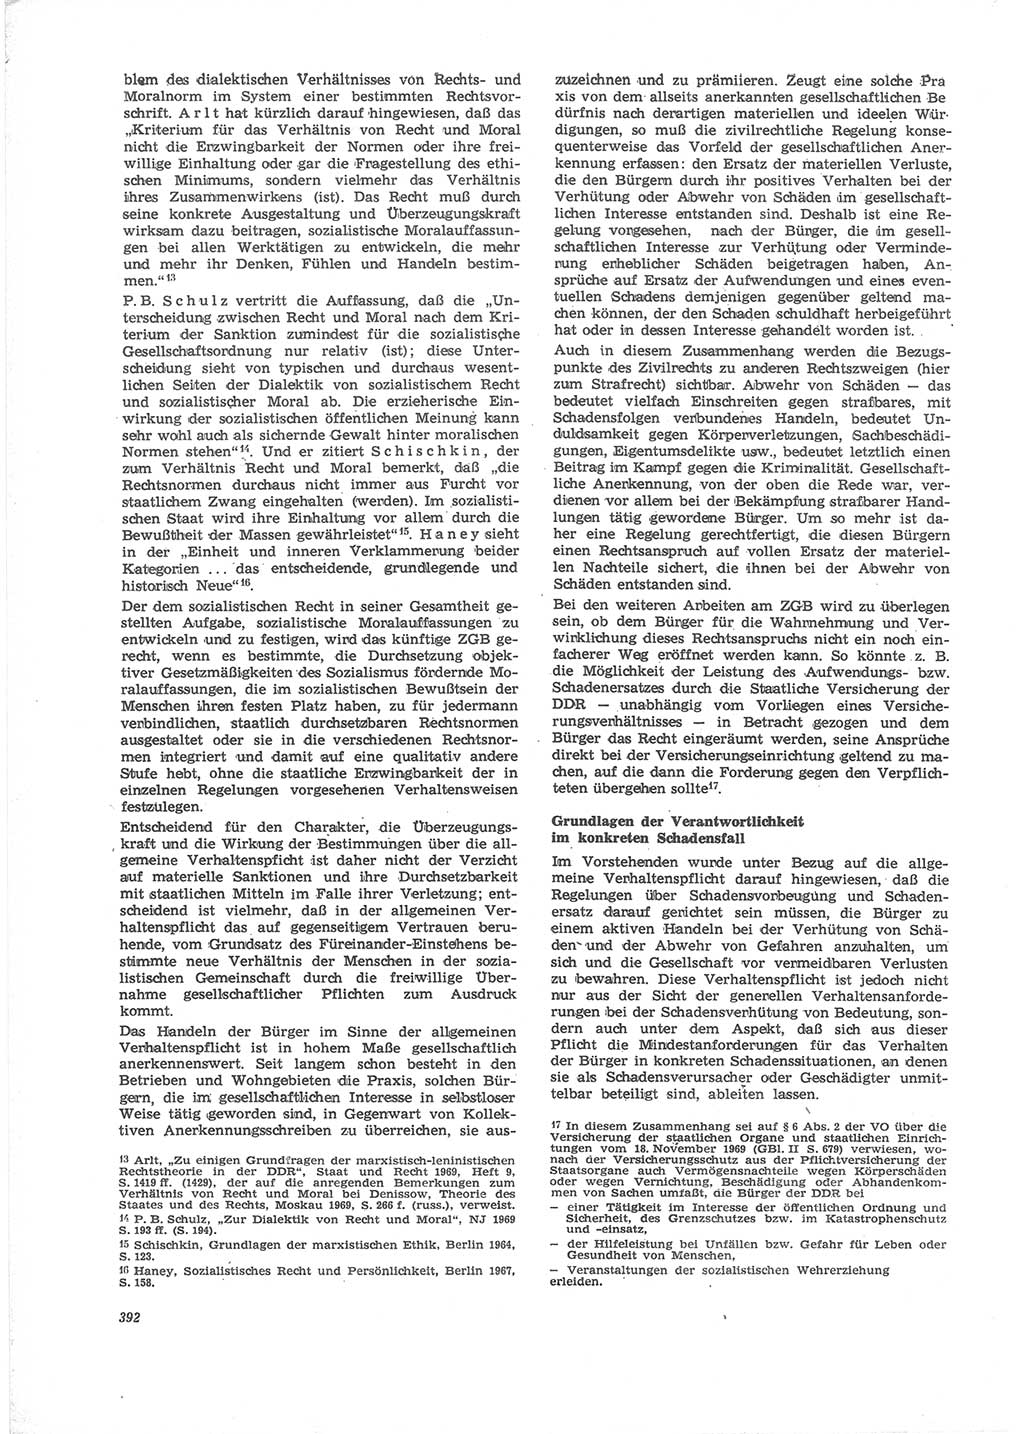 Neue Justiz (NJ), Zeitschrift für Recht und Rechtswissenschaft [Deutsche Demokratische Republik (DDR)], 24. Jahrgang 1970, Seite 392 (NJ DDR 1970, S. 392)